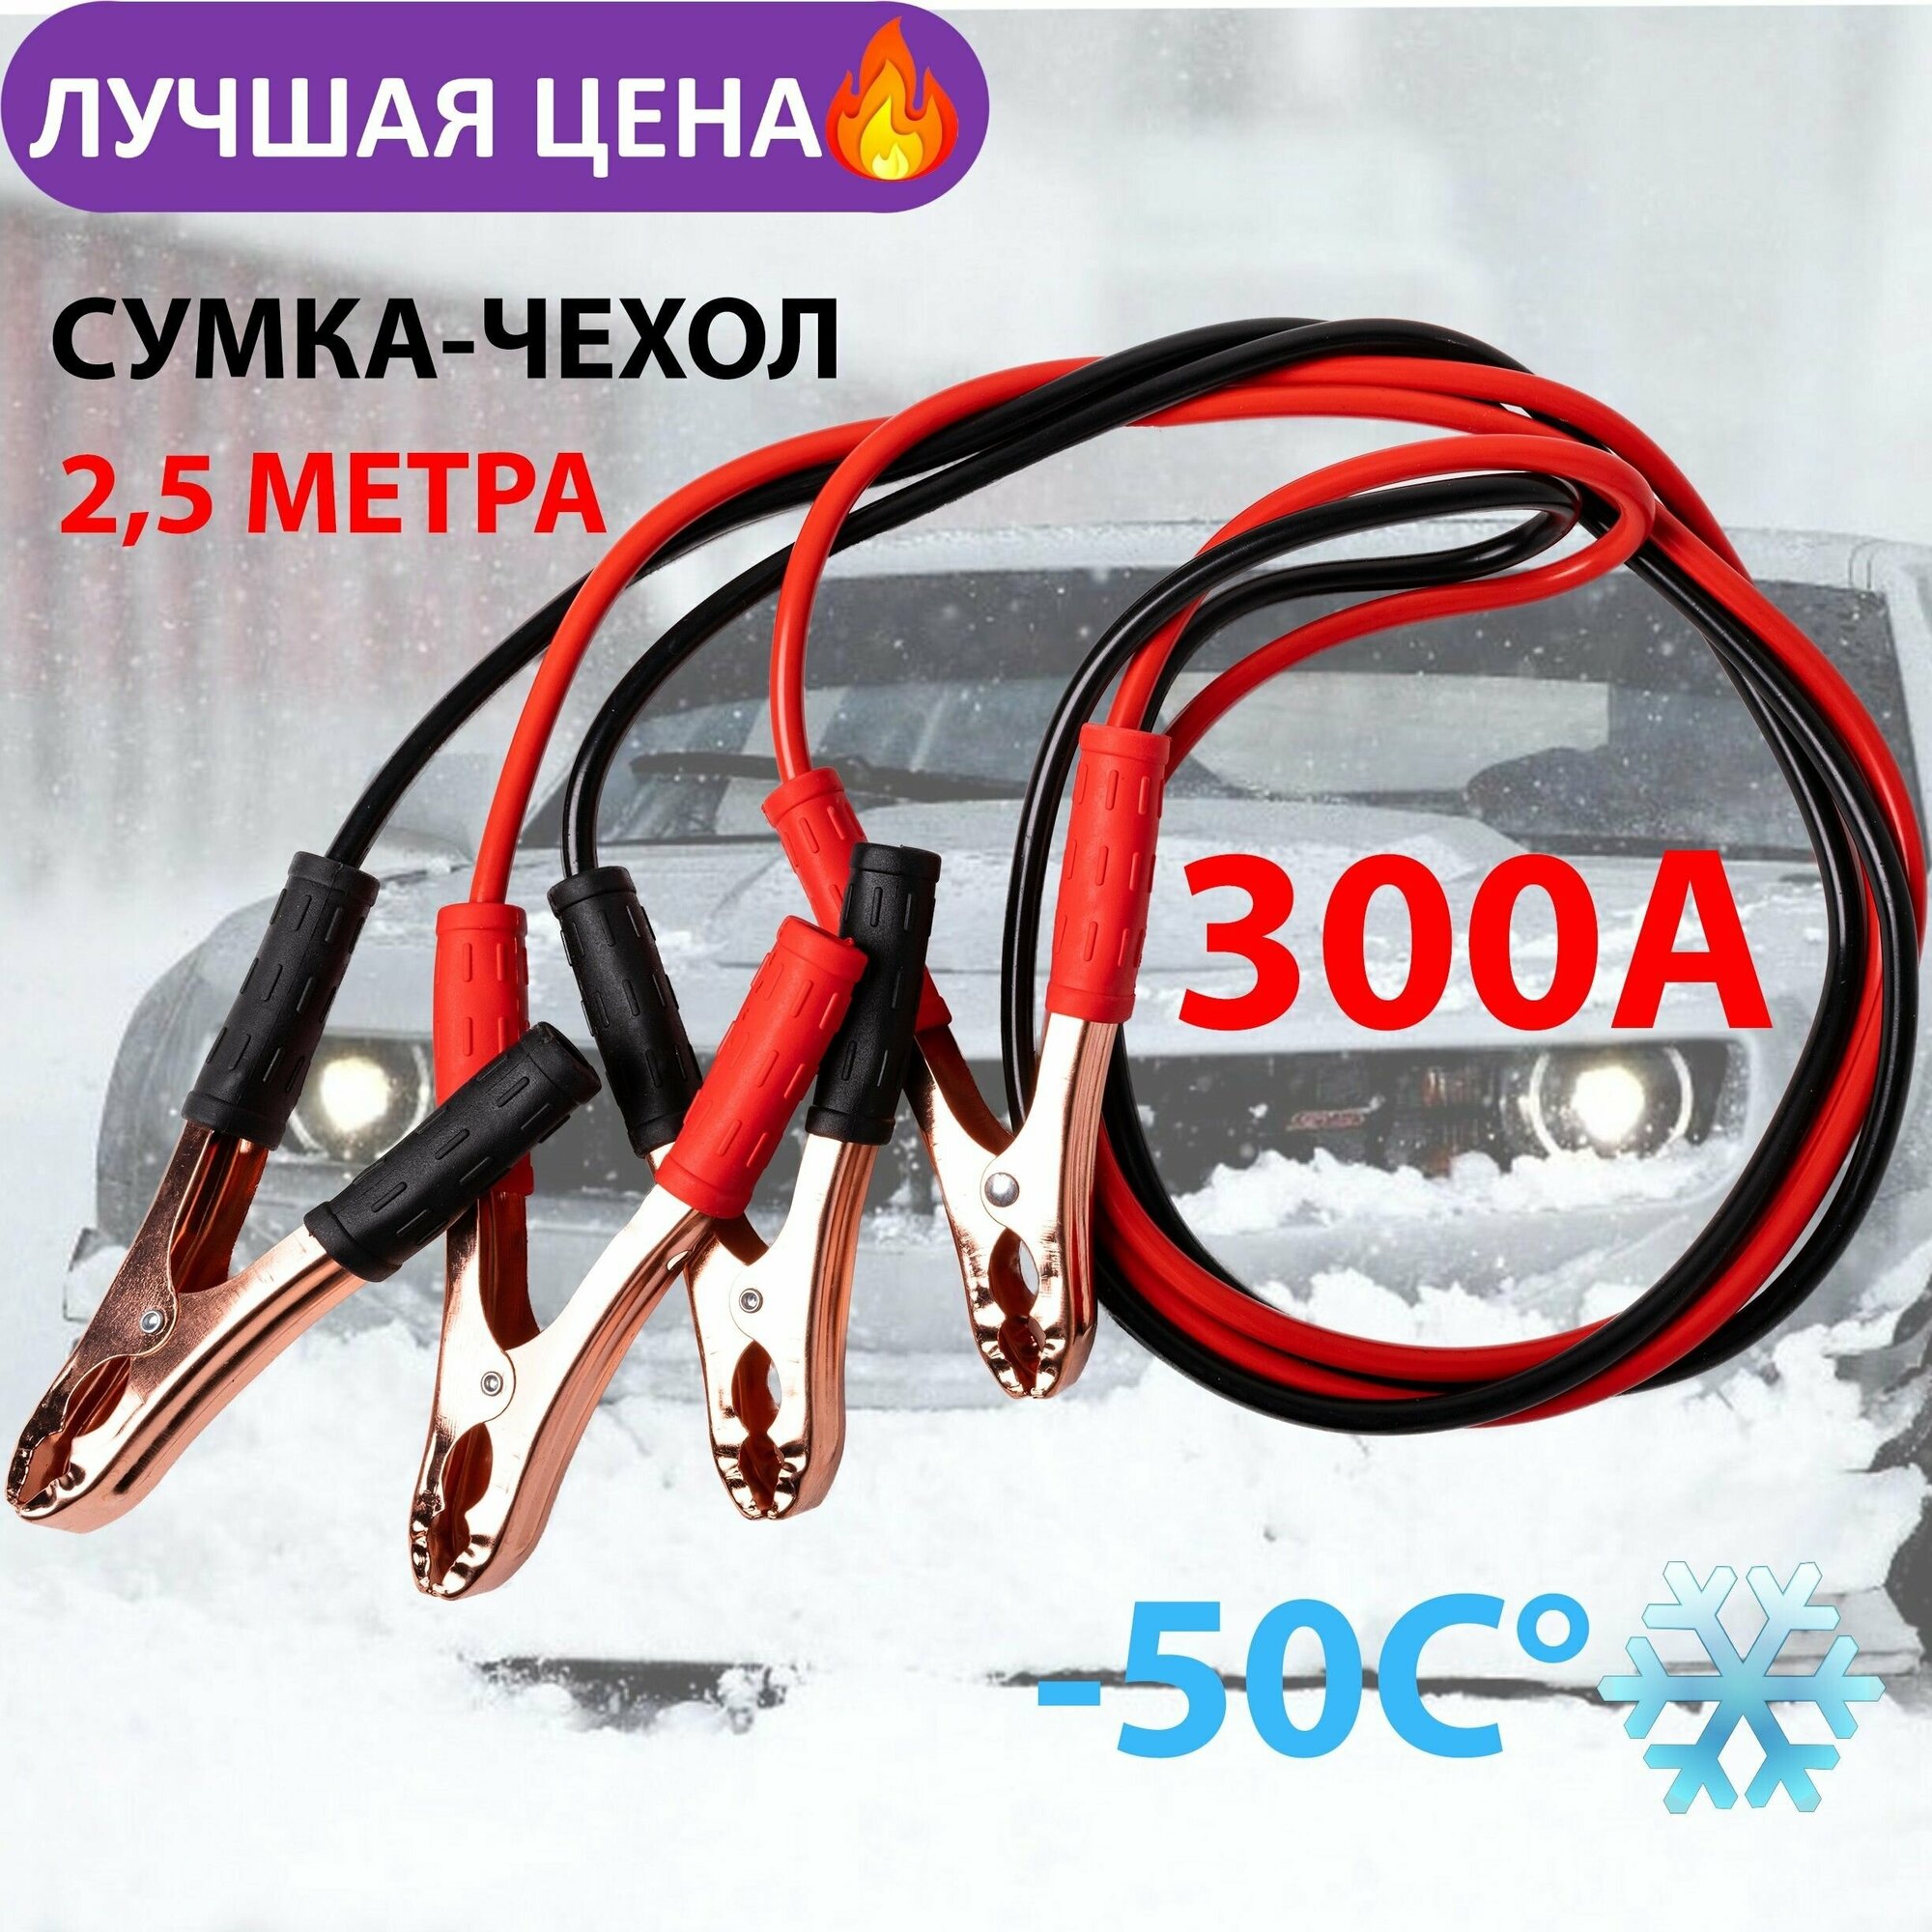 Провода прикуривания /Пусковые провода 300А/ General Technologies морозоустойчивые -50*С.